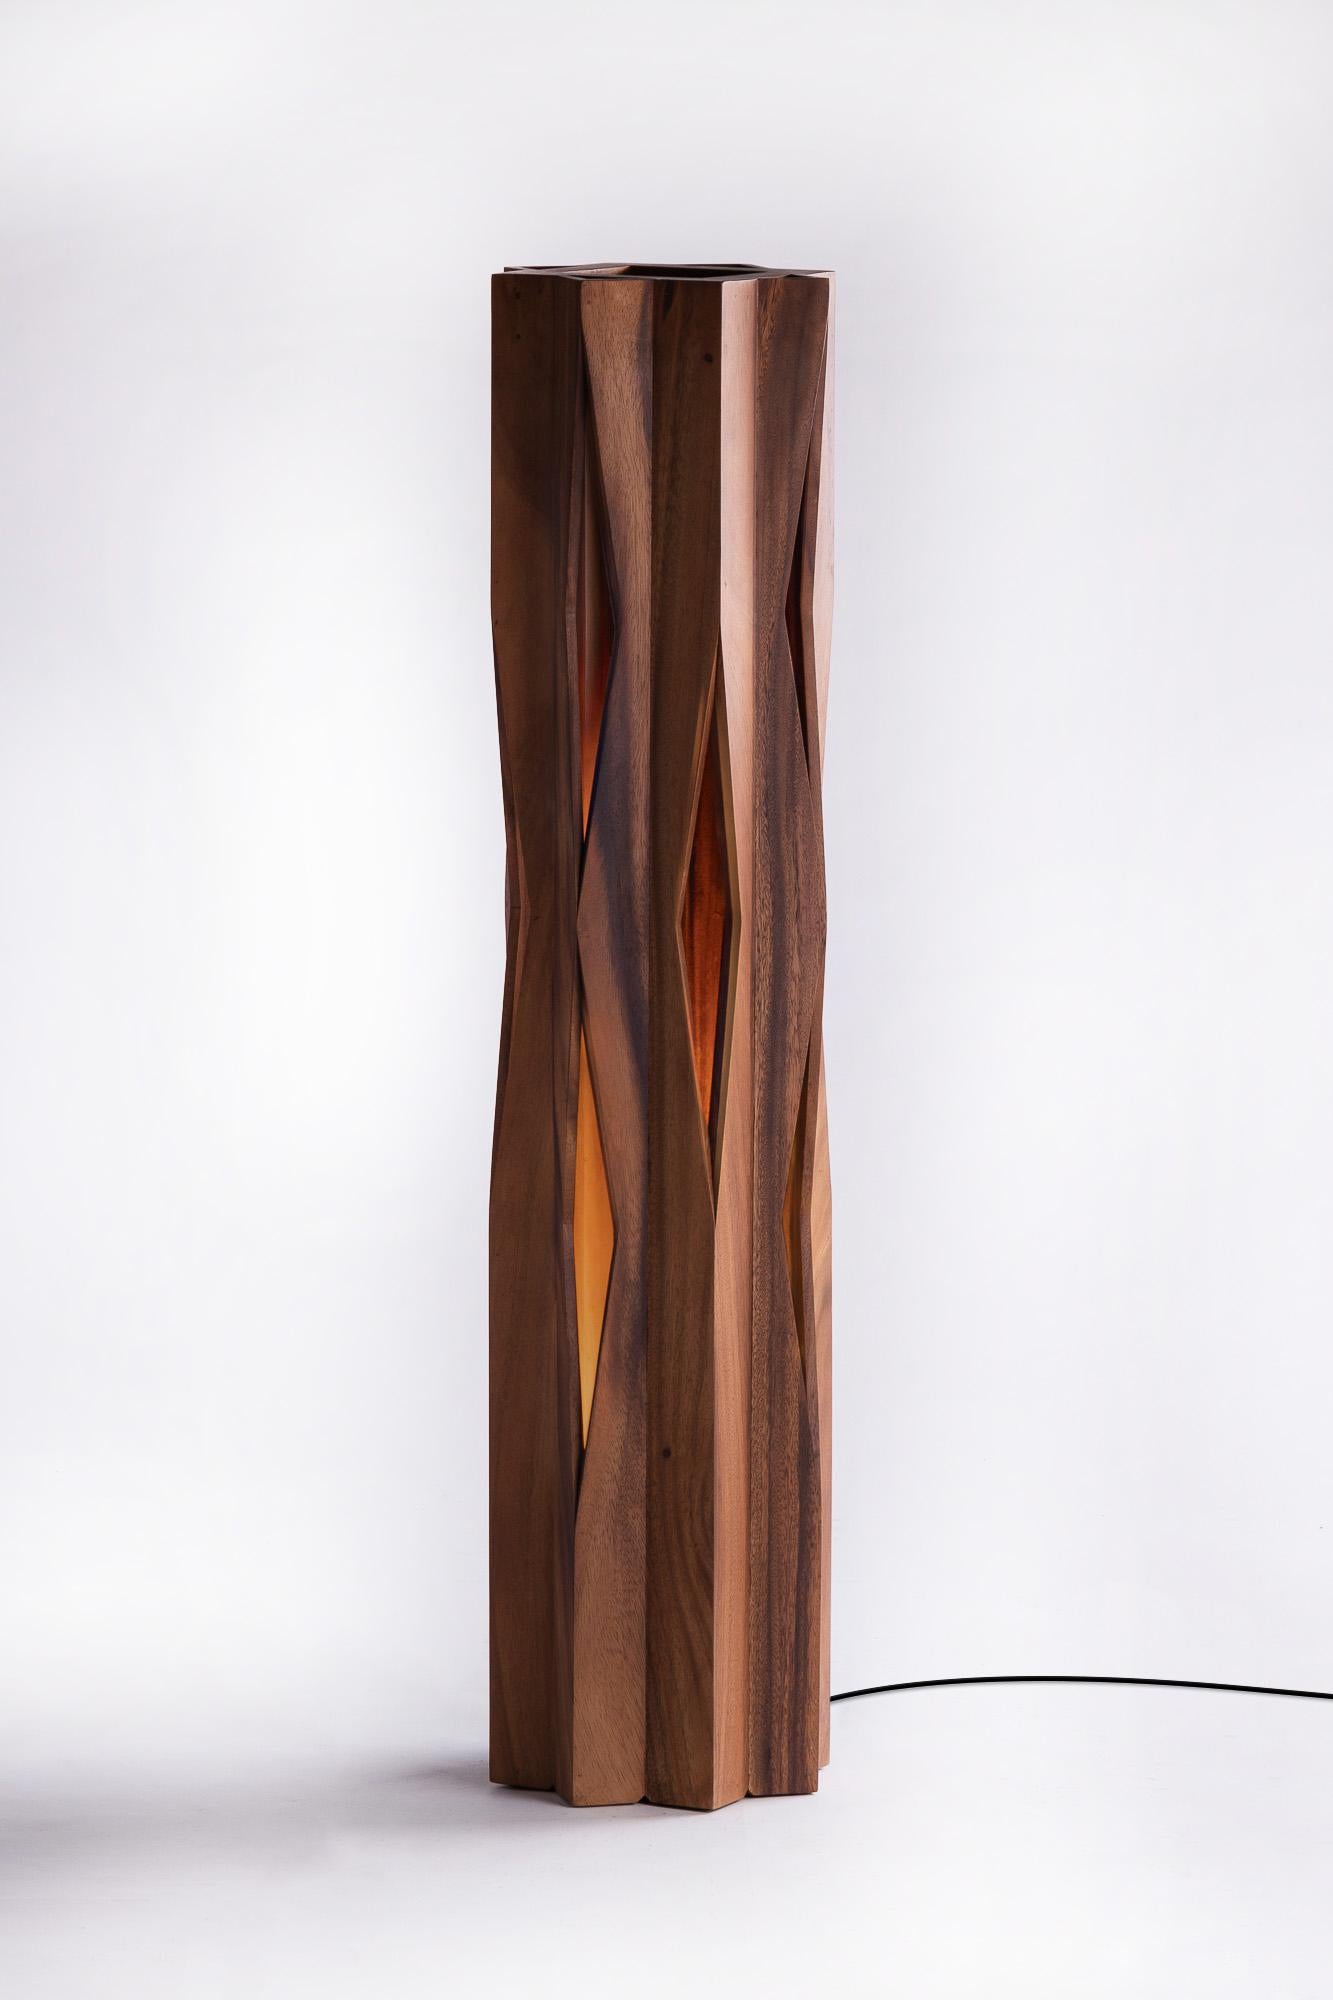 Le lampadaire Groove présente des motifs intéressants sur des arêtes de bois qui sont simplement assemblées avec des angles inhabituels. Il en résulte des interstices de lumière qui font de la lampe une pièce captivante et apportent une touche